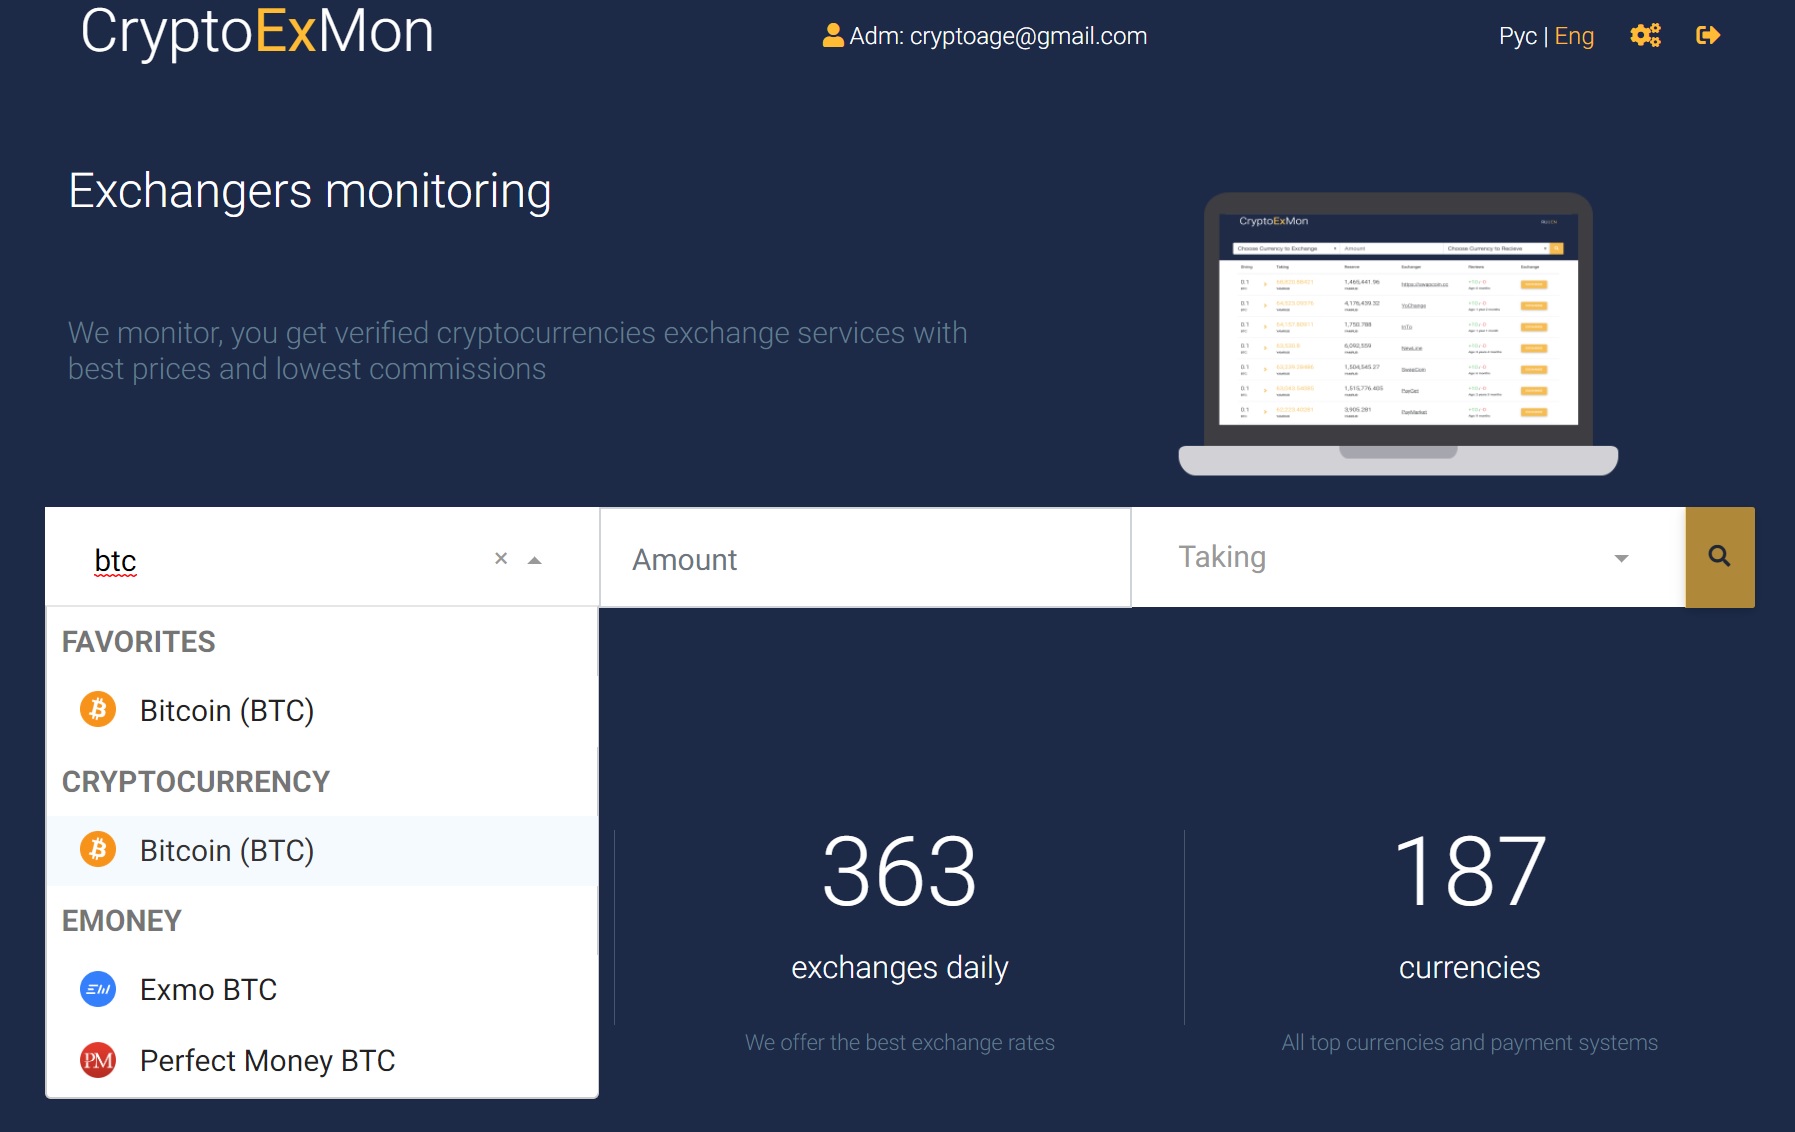 cryptoexmon monitoring exchanges